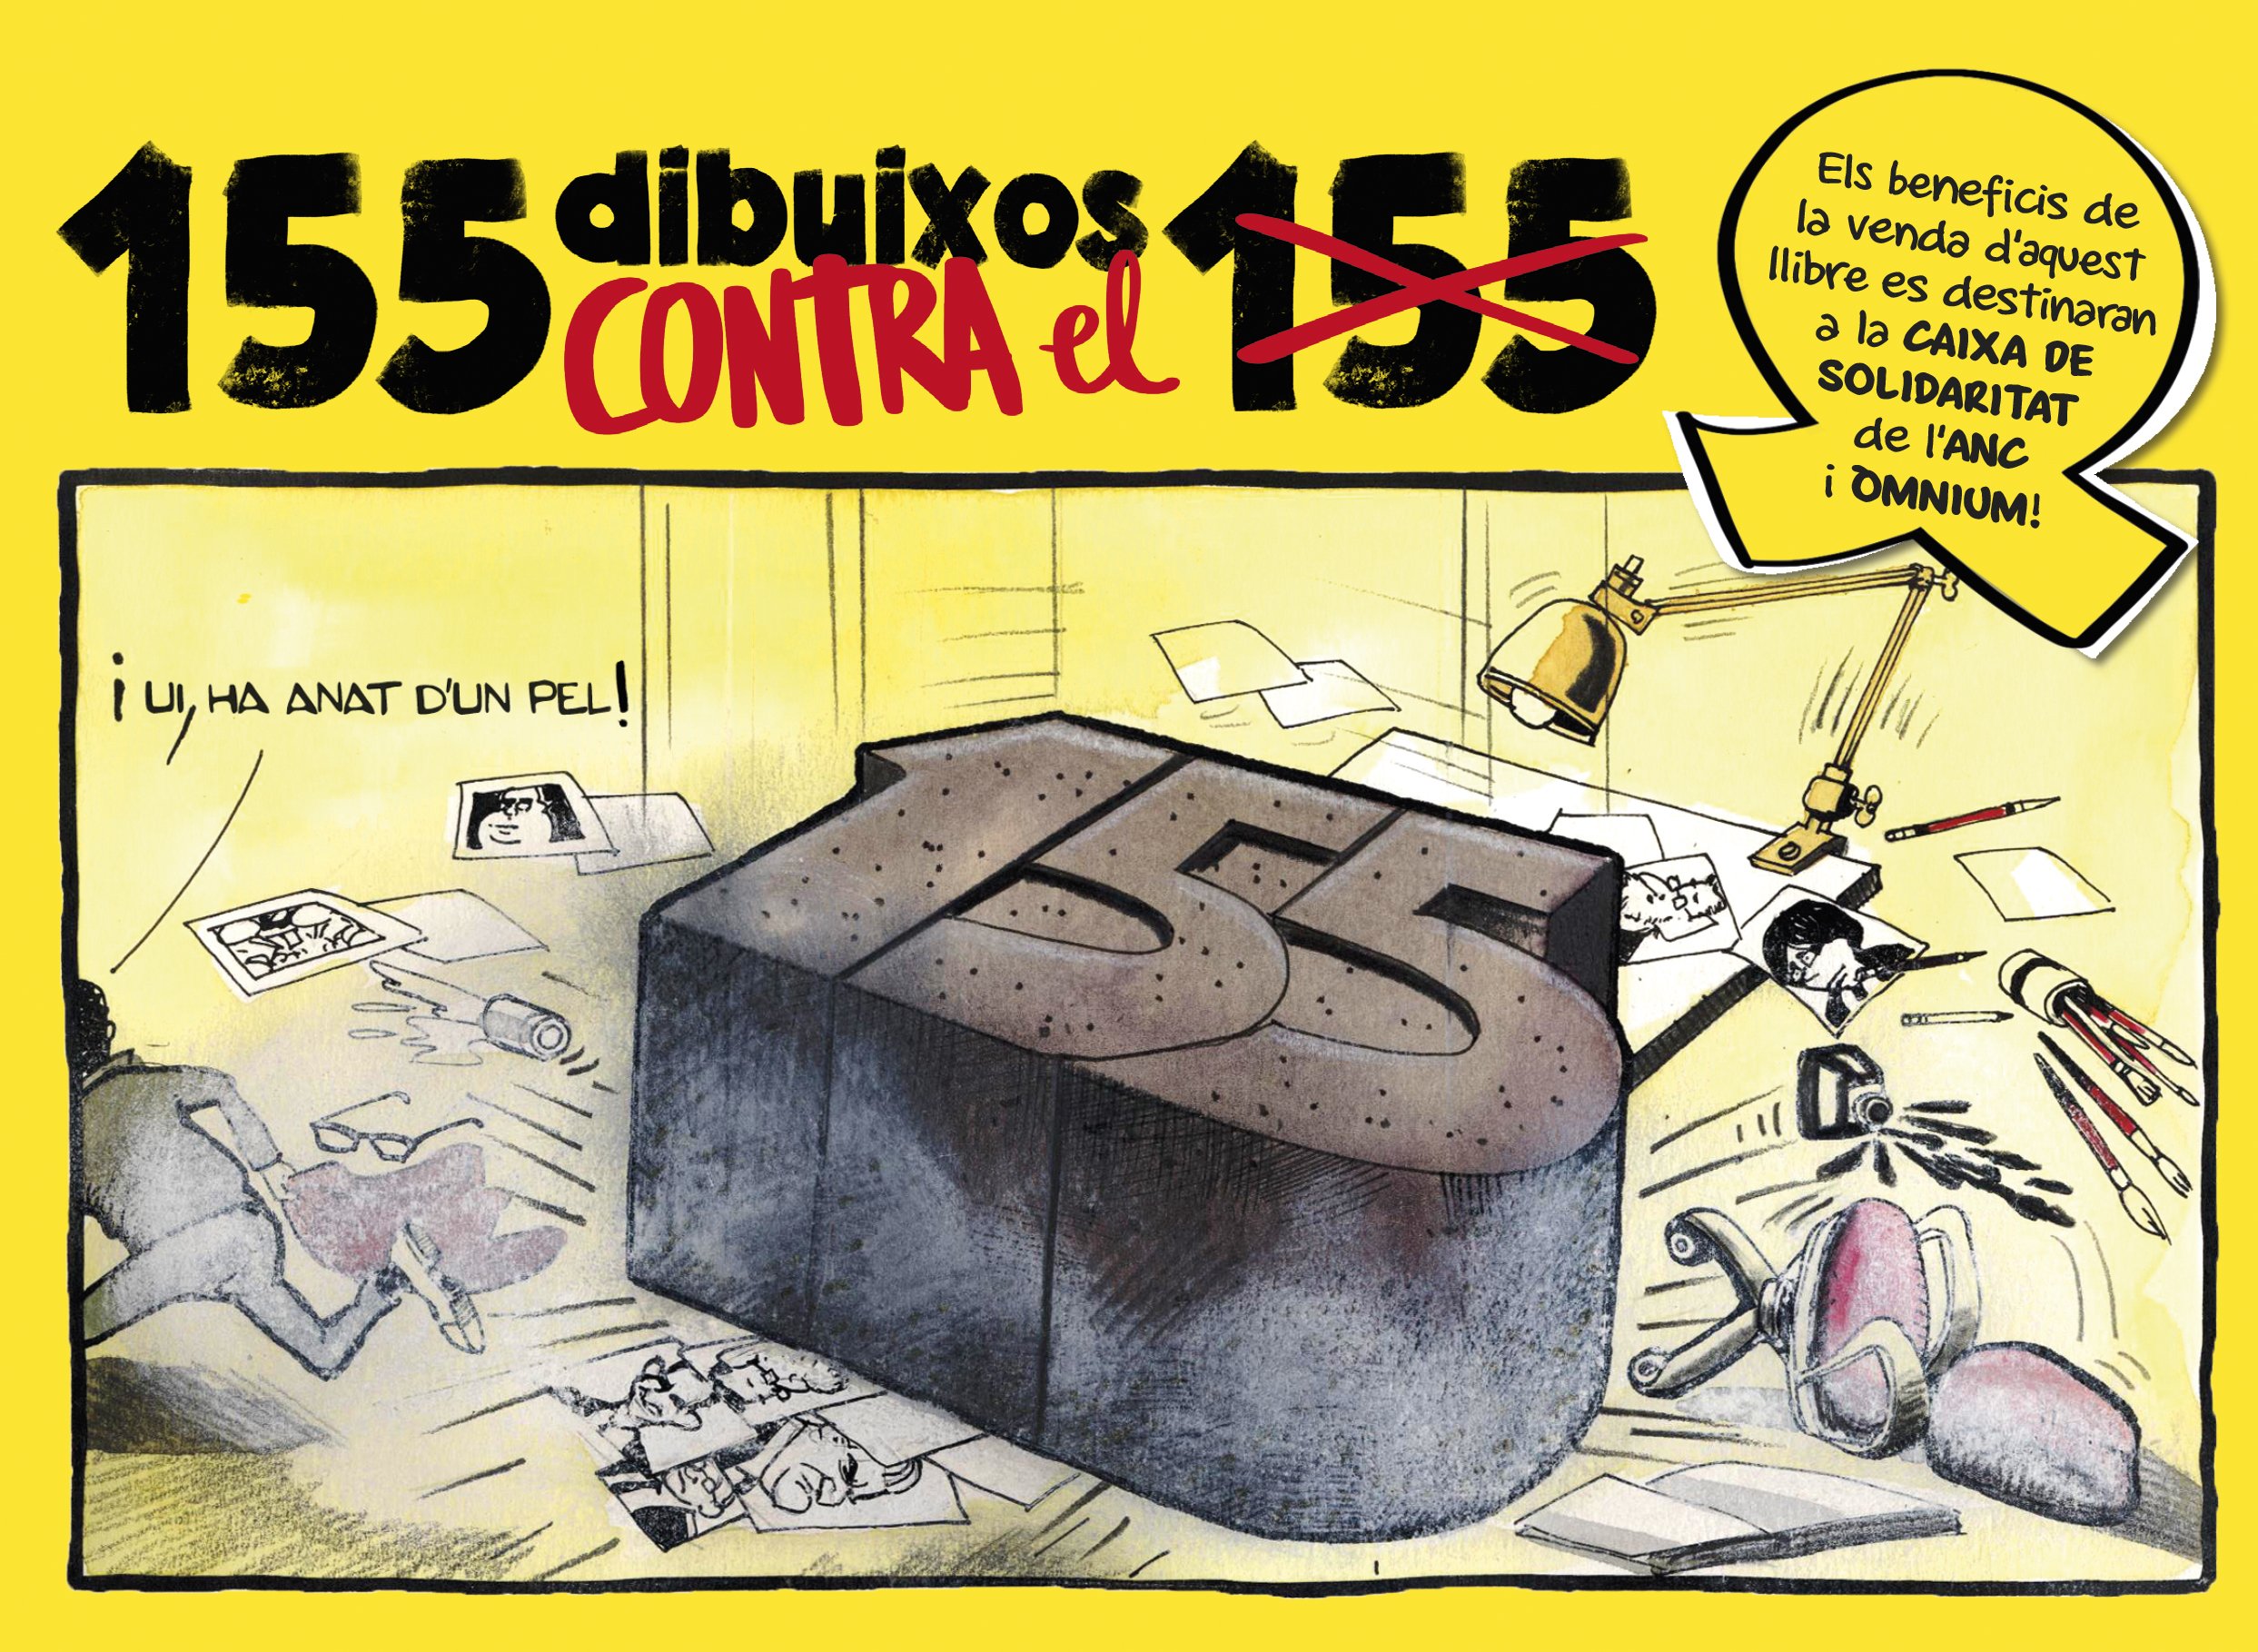 '155 dibuixos contra el 155': los humoristas desafían a la represión